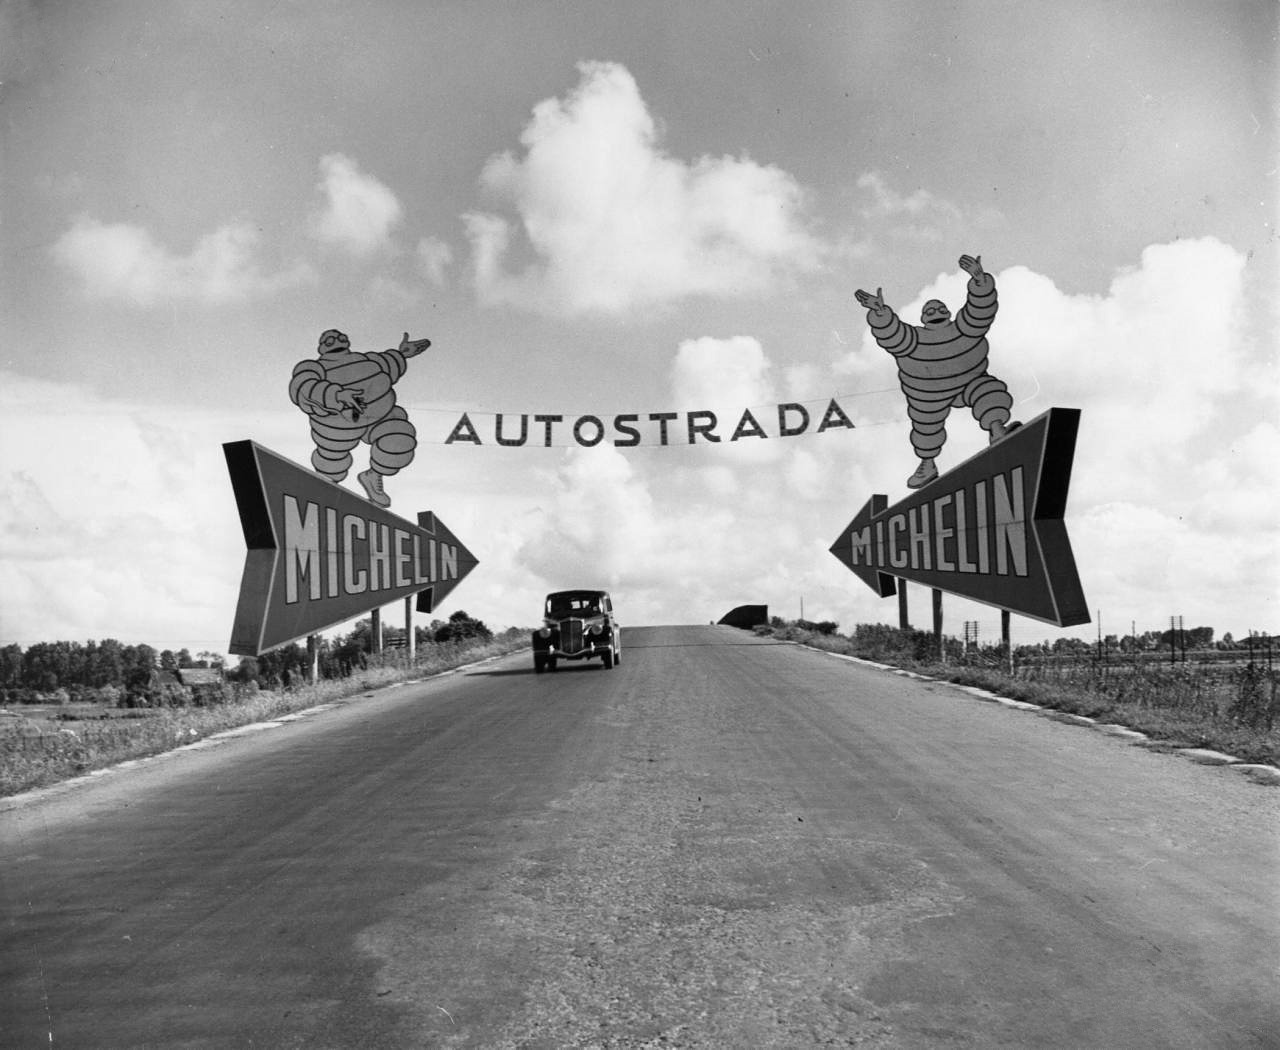 Michelin man billboards, Torino-Milano autostrada photo by Alfred Eisenstaedt, 1947